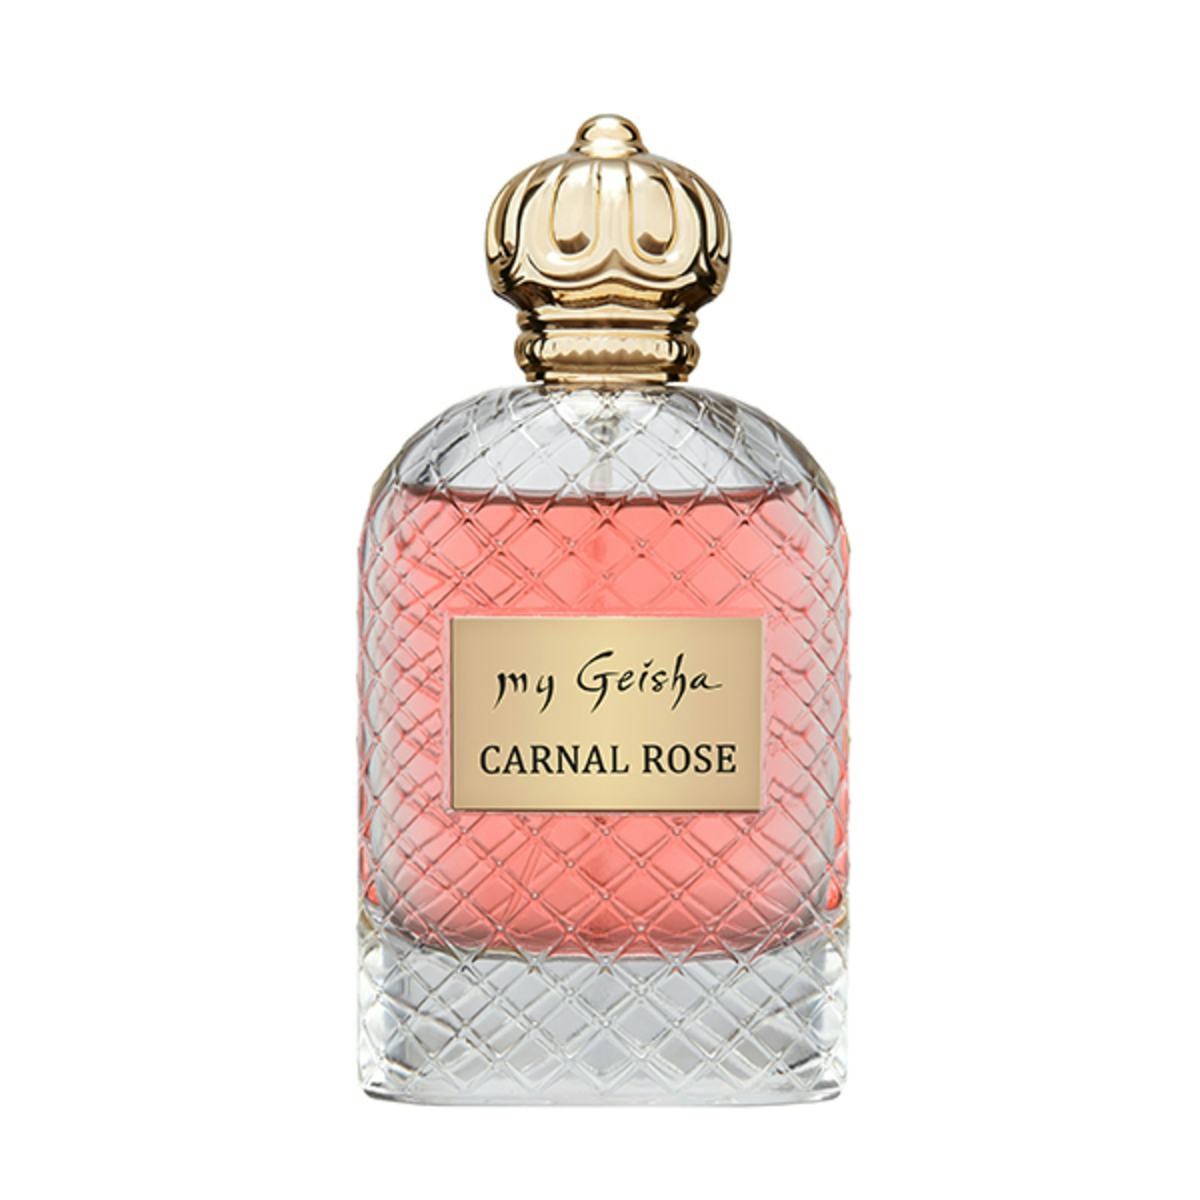 Extrait de parfum Carnal Rose 100ml, handwerkliches Produkt für den Direktverkauf in der Schweiz